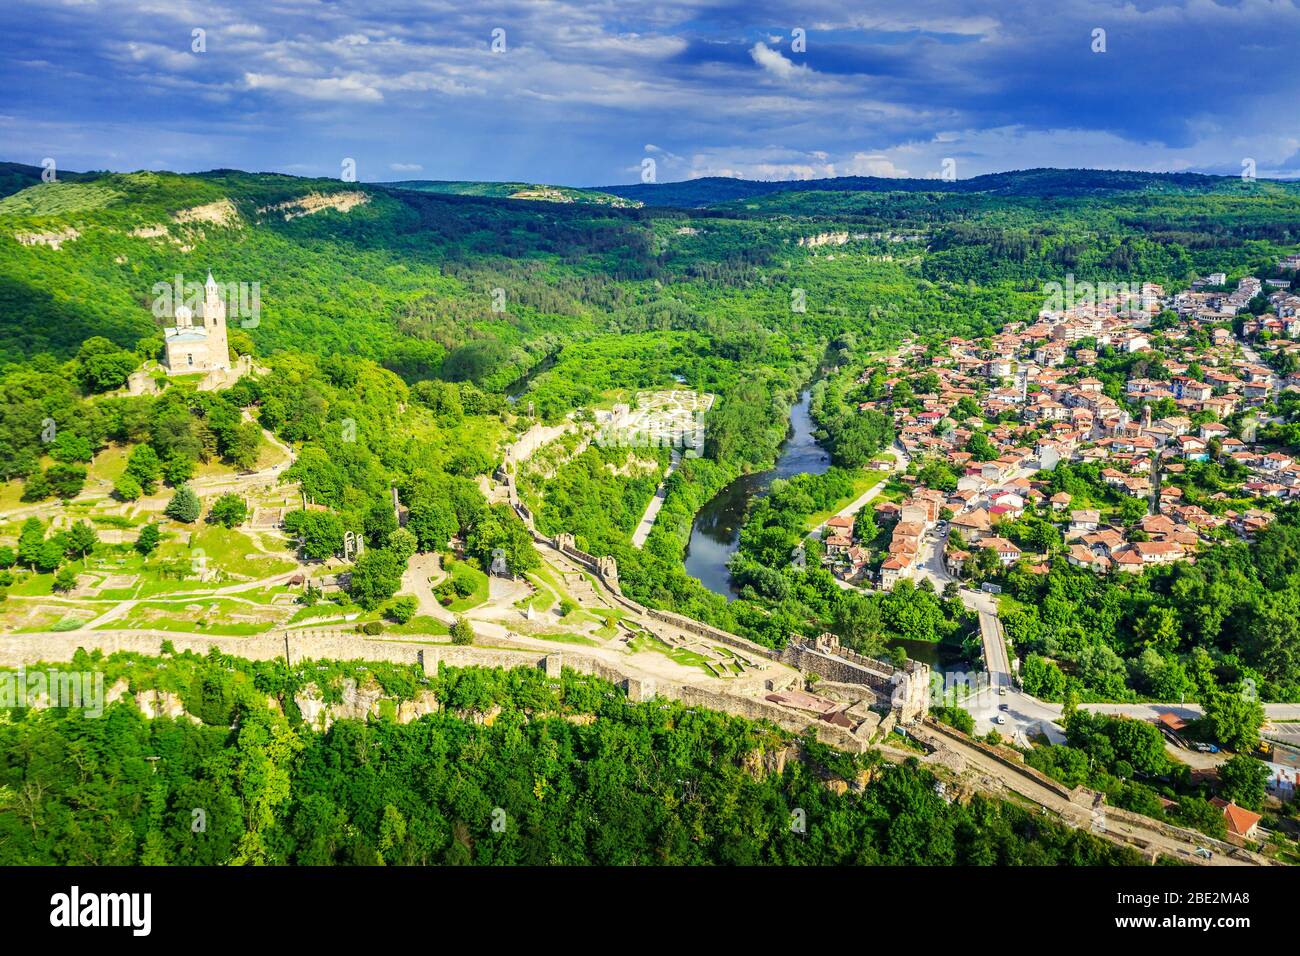 Europa, Bulgaria, Veliko Tarnovo, vista aérea de la fortaleza de Tsarevets Foto de stock